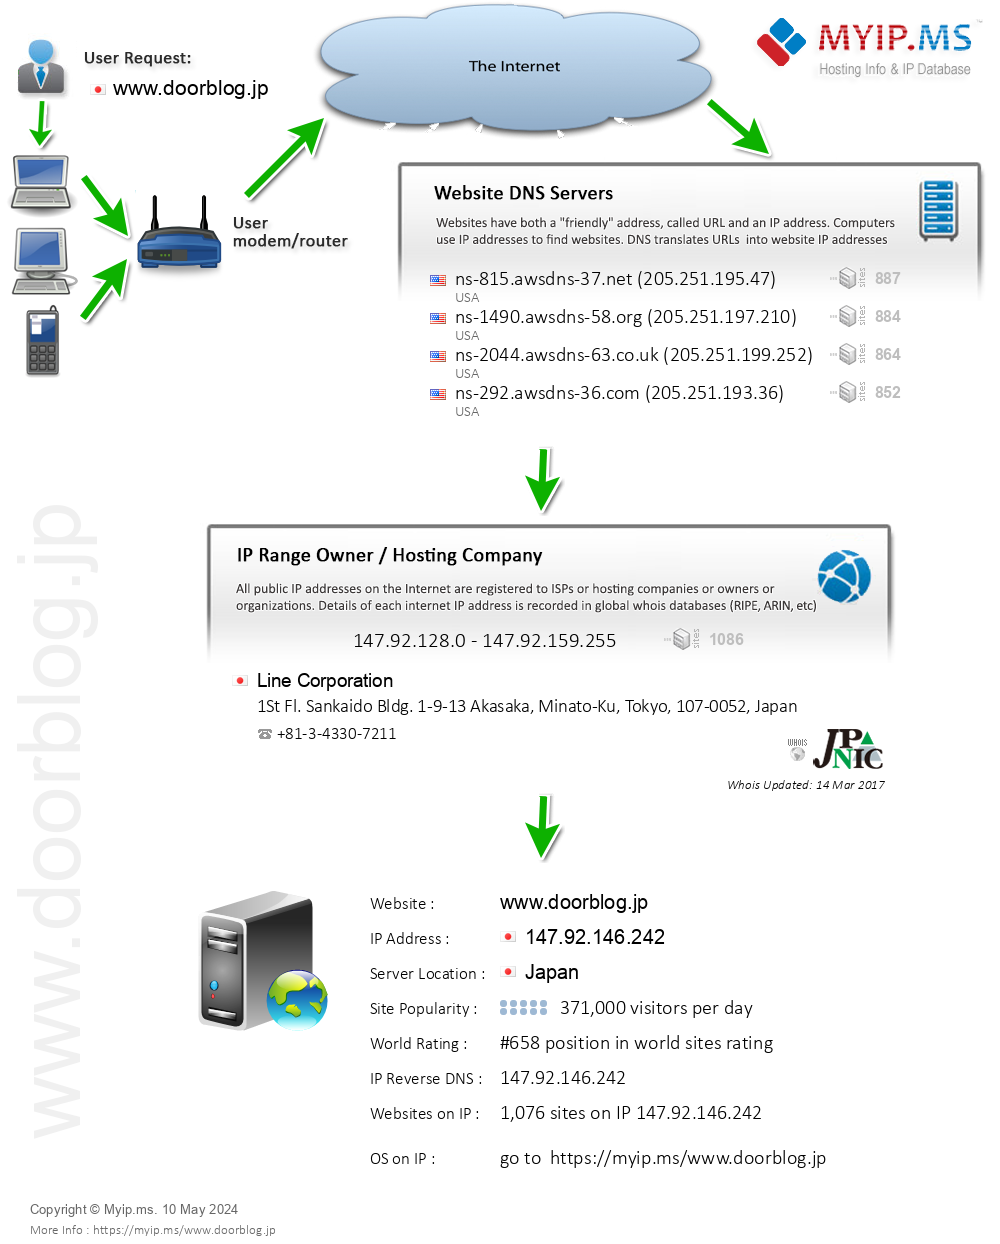 Doorblog.jp - Website Hosting Visual IP Diagram